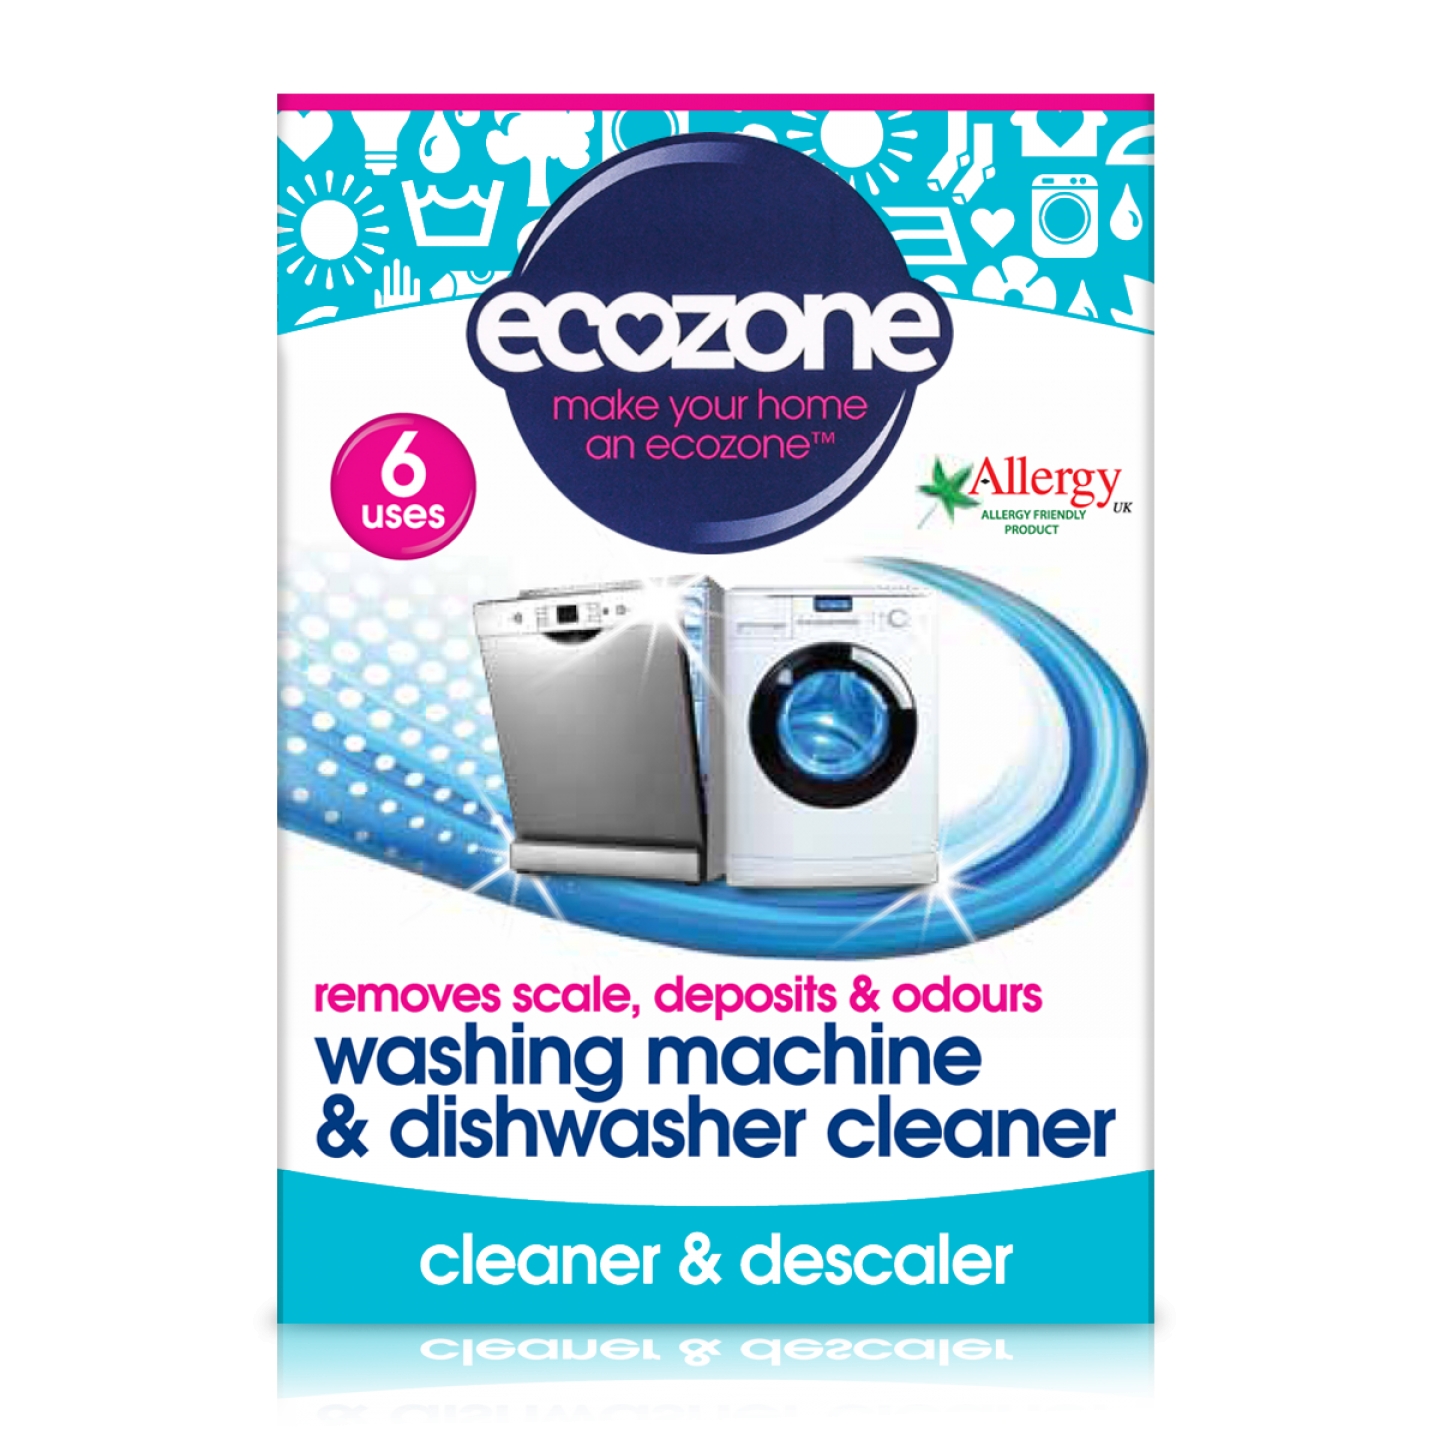 Tablete pentru curatarea masinii de spalat rufe si vase Ecozone – 6 bucati